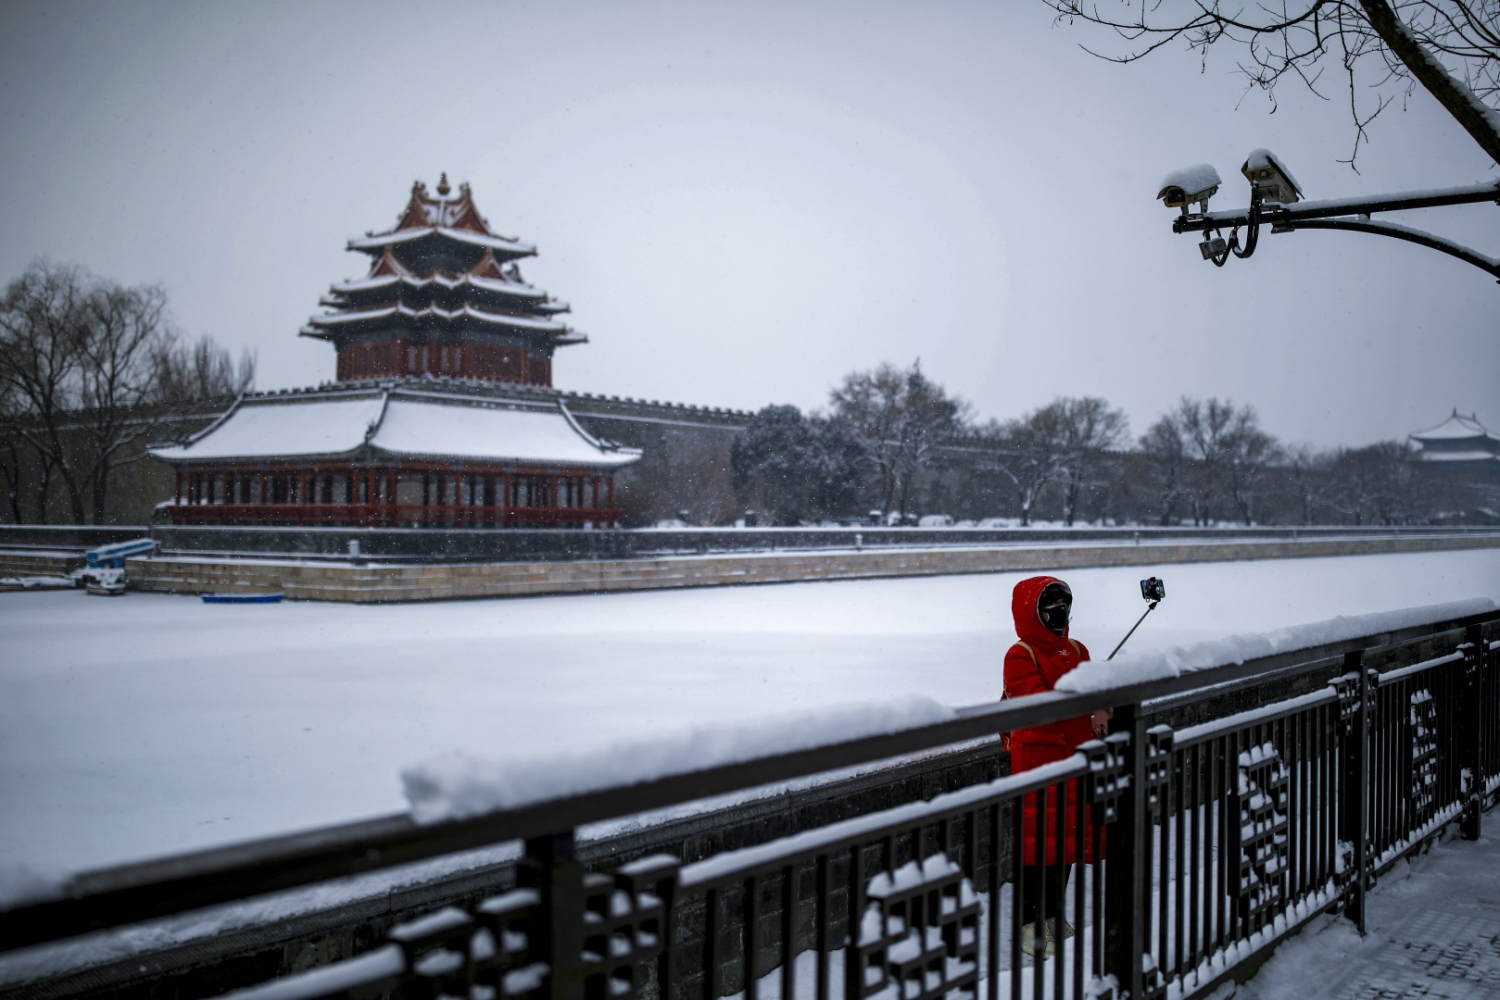 Nữ du khách đeo khẩu trang chụp ảnh trước Tử Cấm Thành. Một nhân viên an ninh của công viên Cảnh Sơn bên cạnh Tử Cấm Thành ở Bắc Kinh cho biết lượng khách giảm xuống còn chưa đến 1/3 so với trước đây.